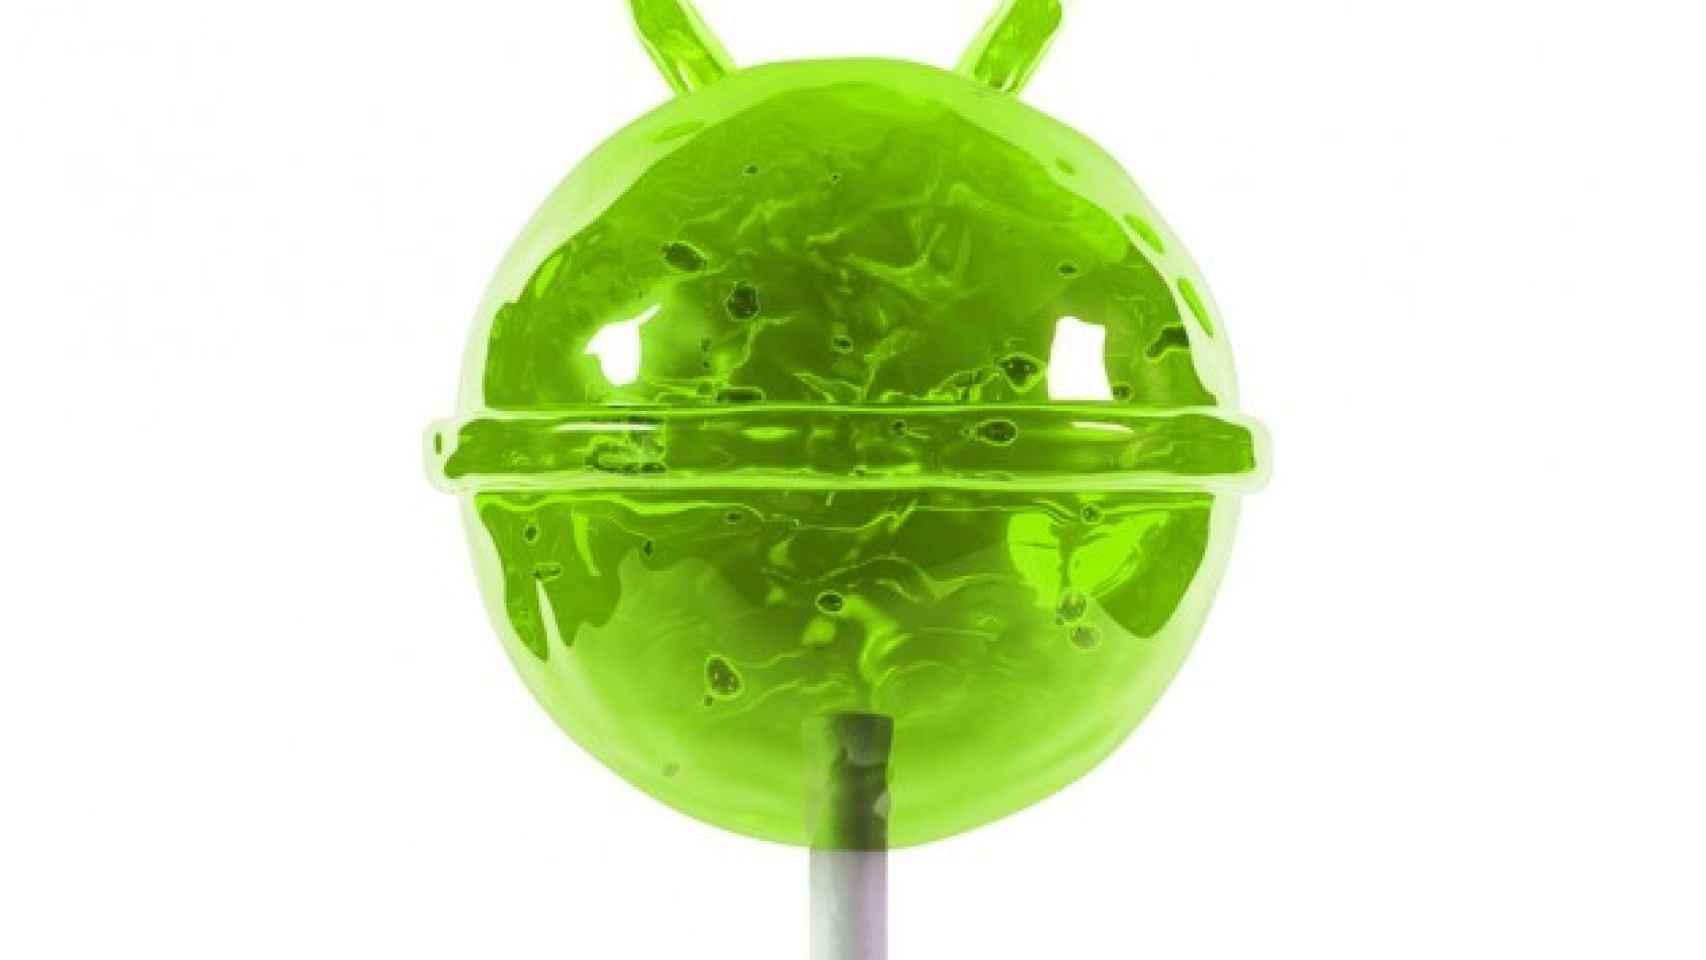 La OTA de Android 5.0 Lollipop para los Nexus se retrasaría al 12 de Noviembre